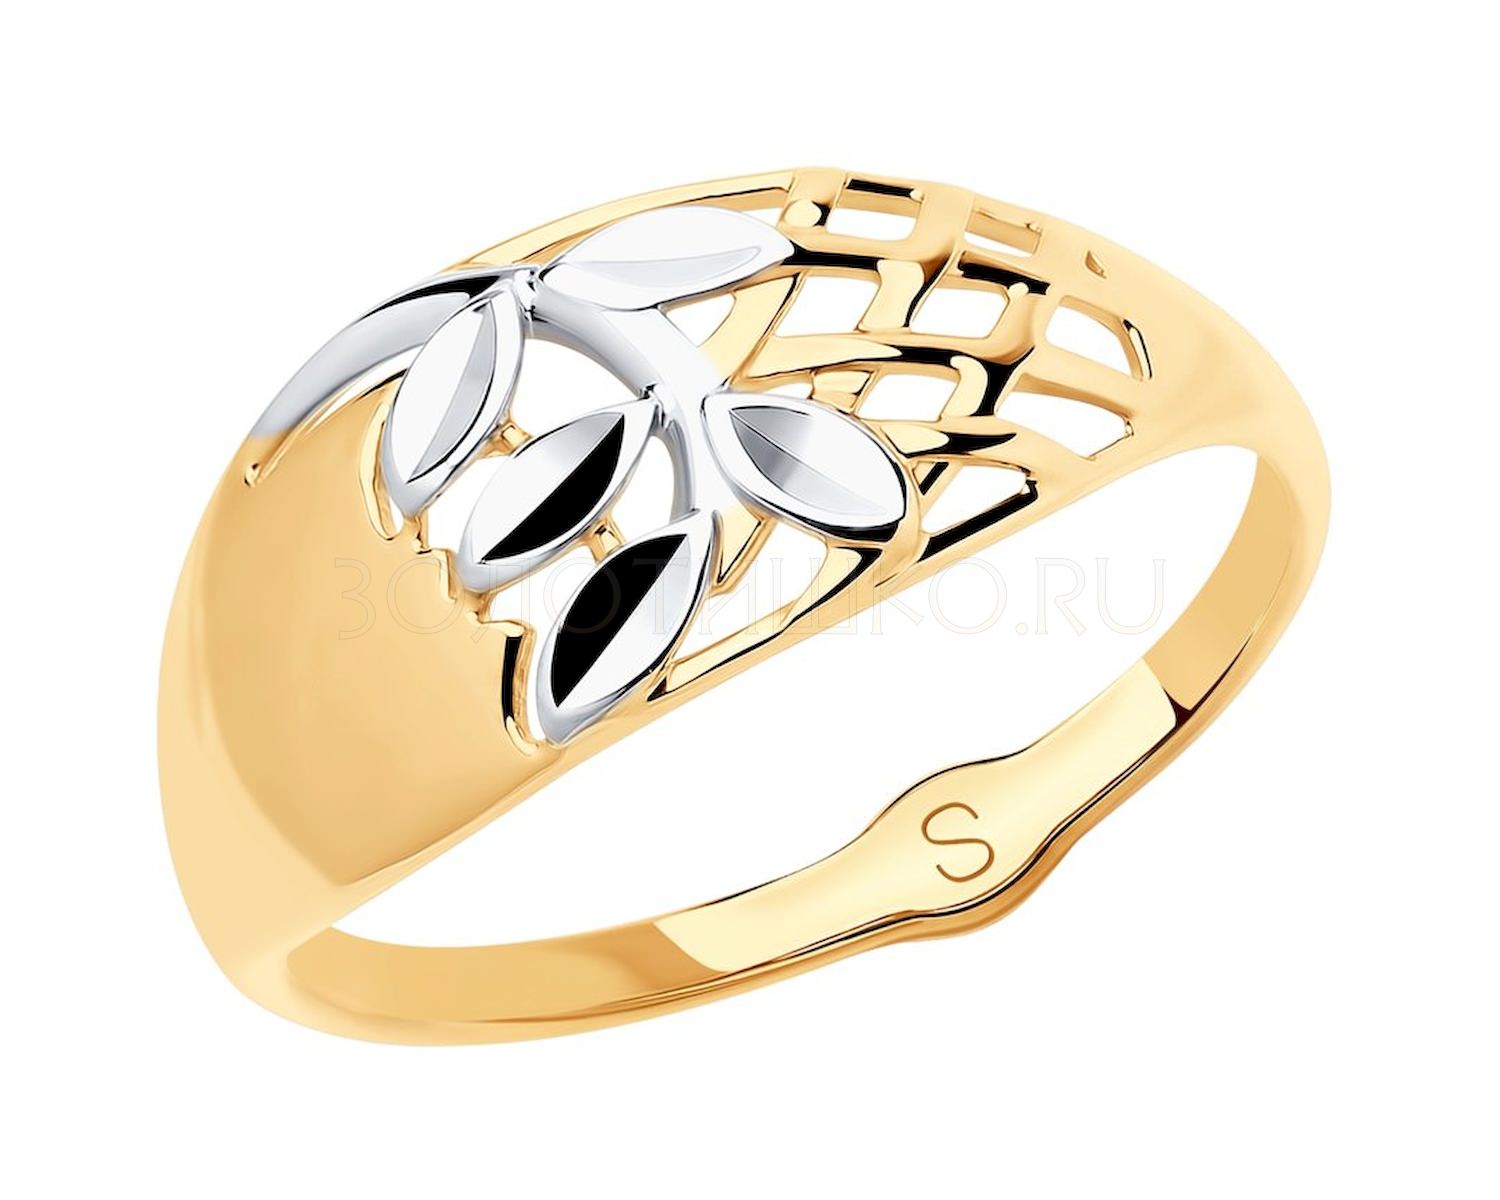 Золотое кольцо с алмазной гранью. SOKOLOV кольцо из золота с алмазной гранью 018082. Украшения из золота 585 2022. Соколов кольцо с алмазной гранью. SOKOLOV кольцо из золота с алмазной гранью 017342.